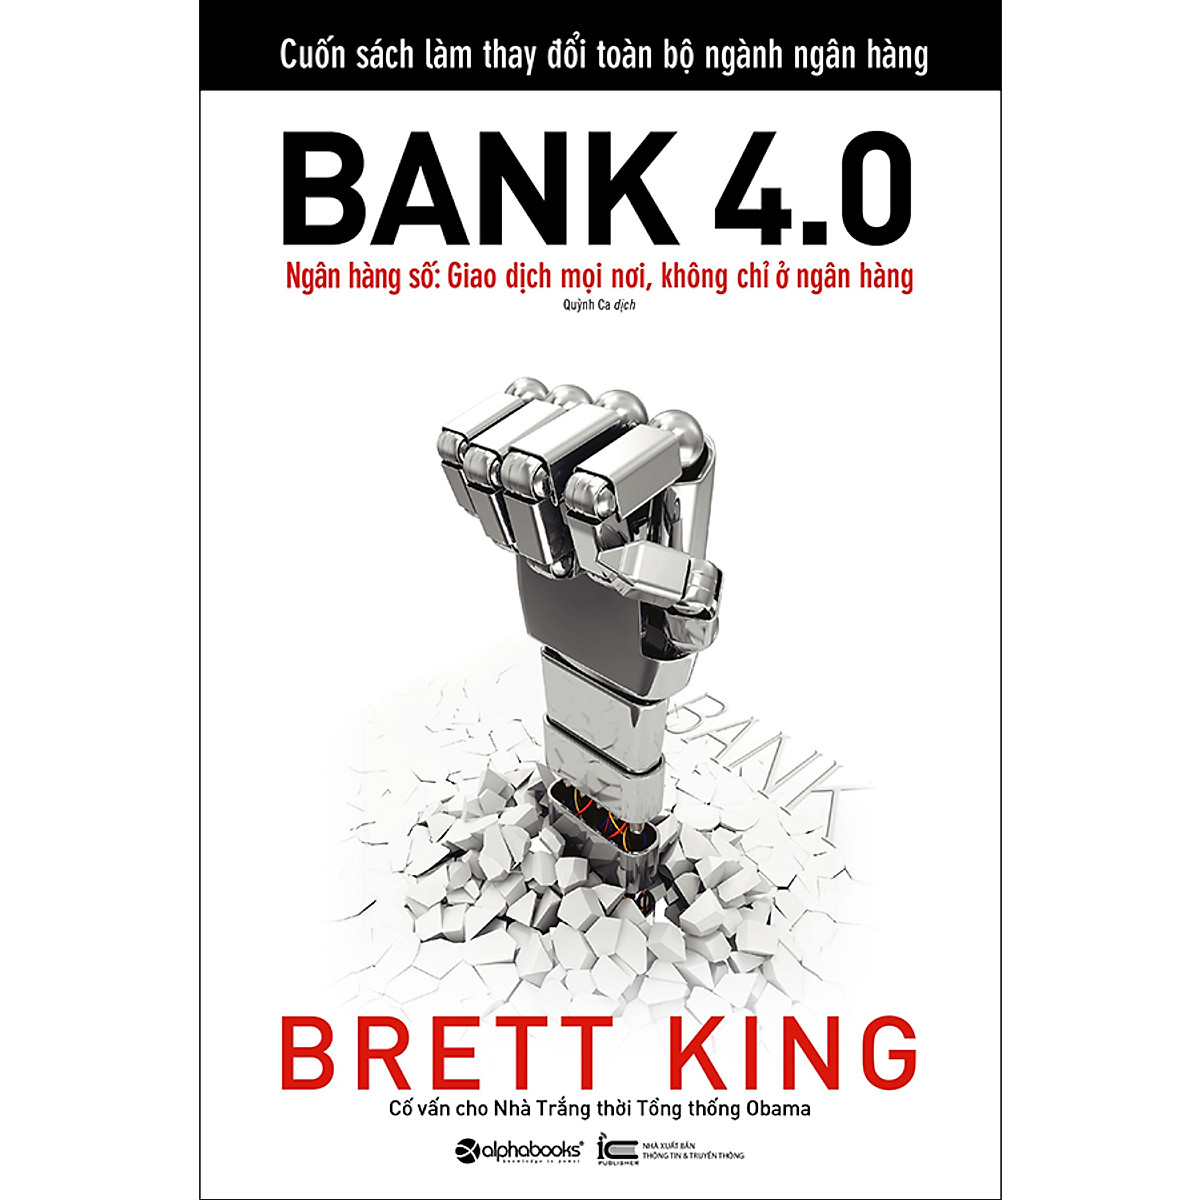 Combo 2 cuốn sách: 20 Phút Phân Tích Tài Chính + Bank 4.0 (Ngân Hàng Số : Giao Dịch Ở Mọi Nơi Không Chỉ Ở Ngân Hàng)